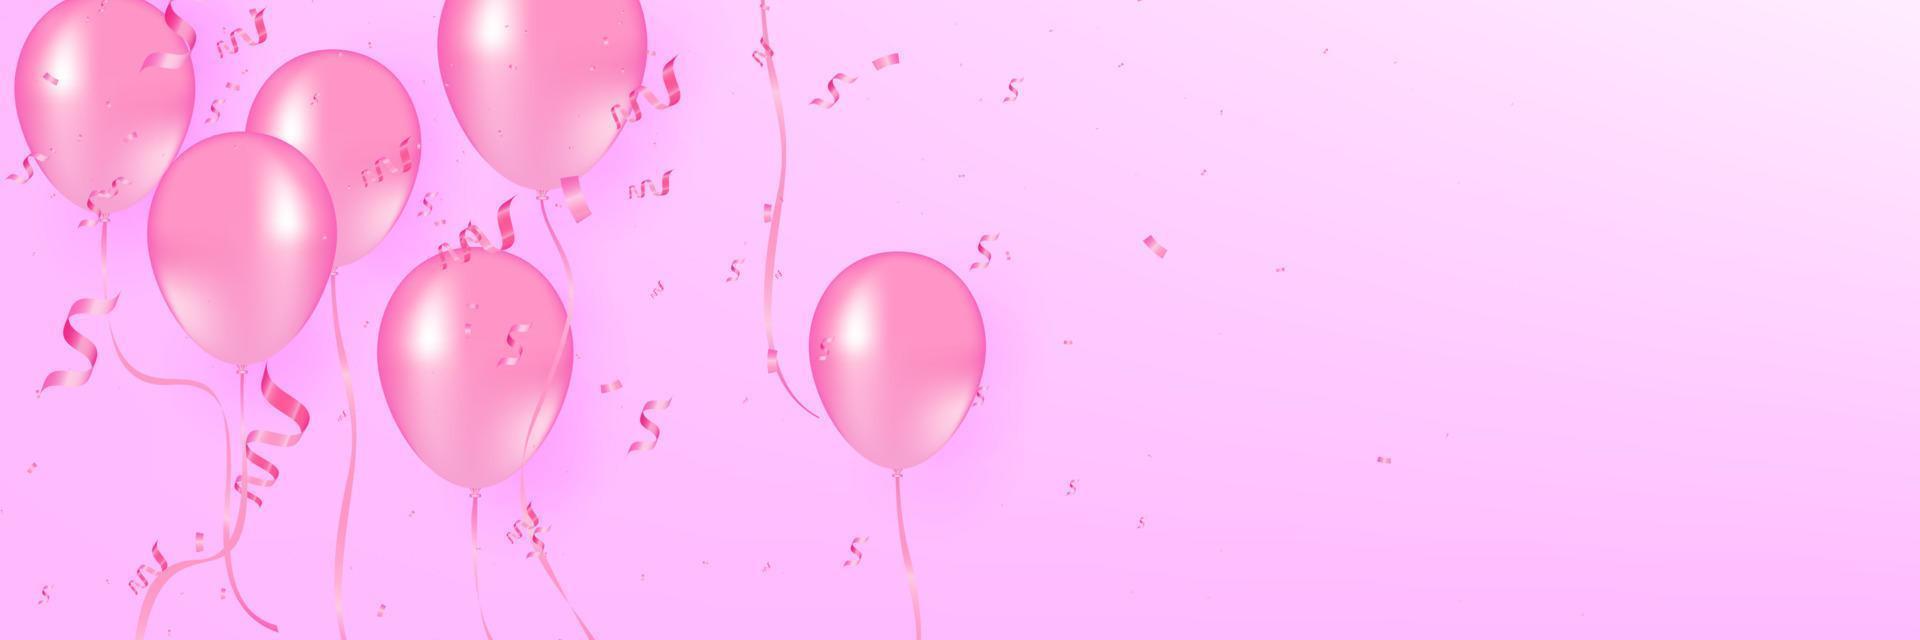 weiche rote luftballons mit konfetti realistische vektorillustration. rosa Luftballons Vektorhintergrund. Rosa Luftballons und Konfetti können für Partys, Feiern und Feiertage verwendet werden. vektor